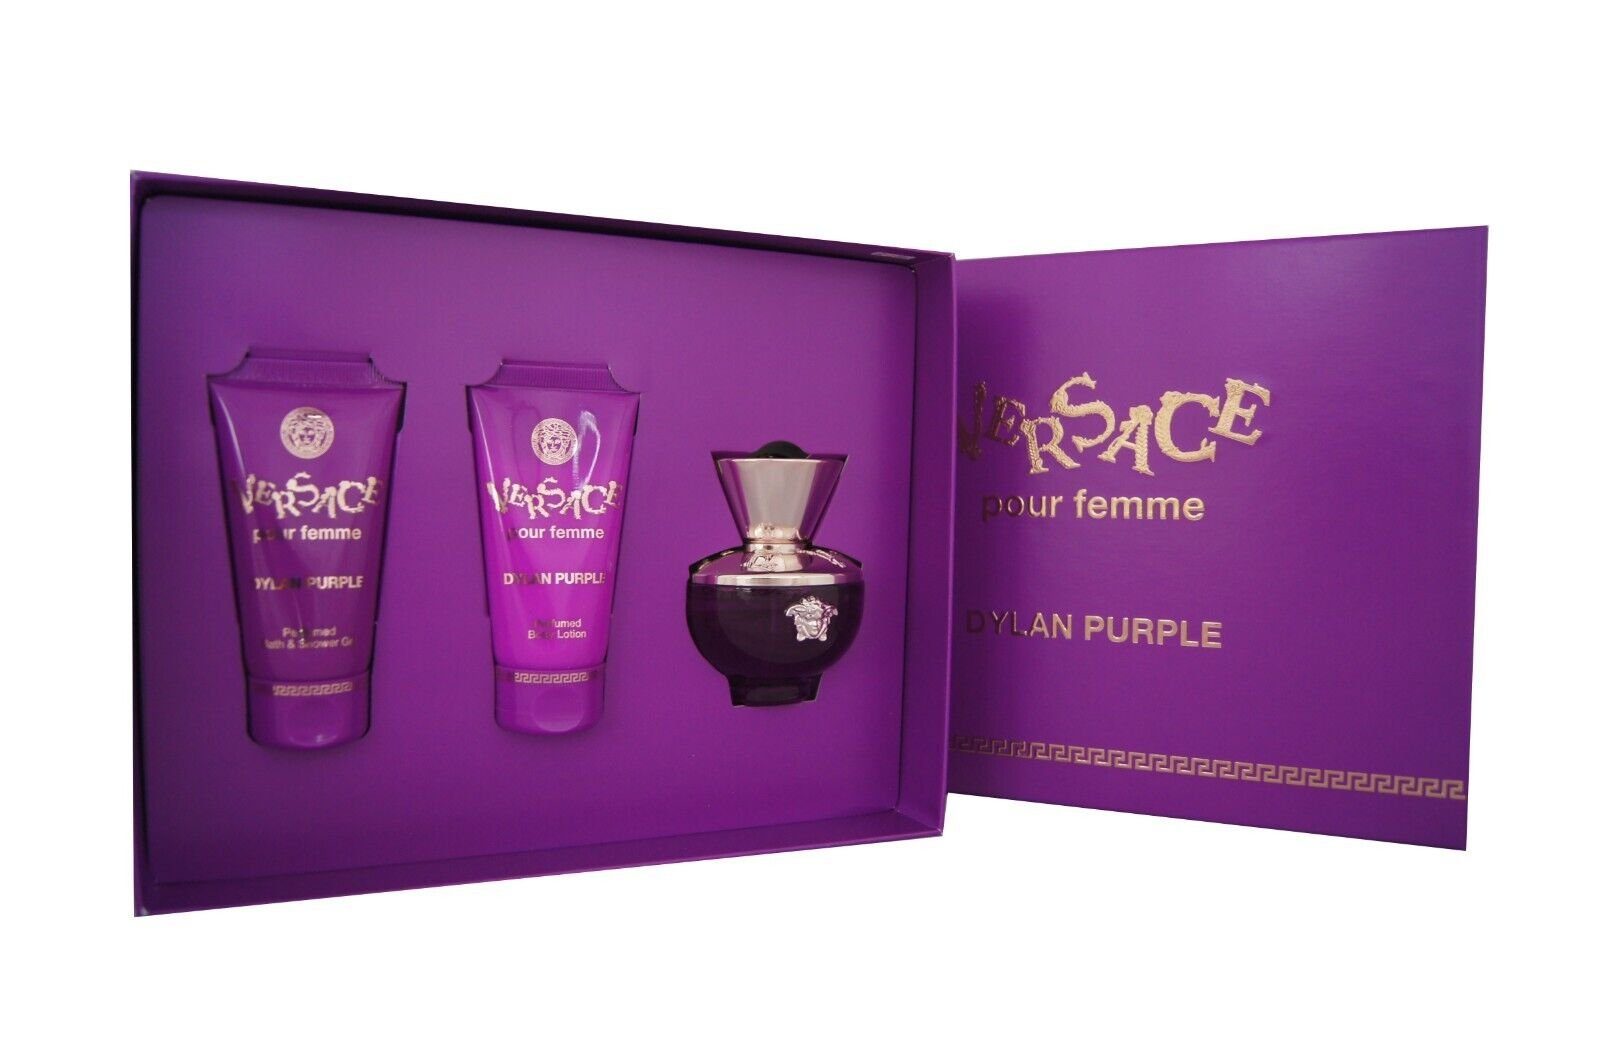 Versace Duft-Set Versace pour EDP + Purple Set, Dylan 50ml femme BL SG 50ml + - 50ml 1-tlg